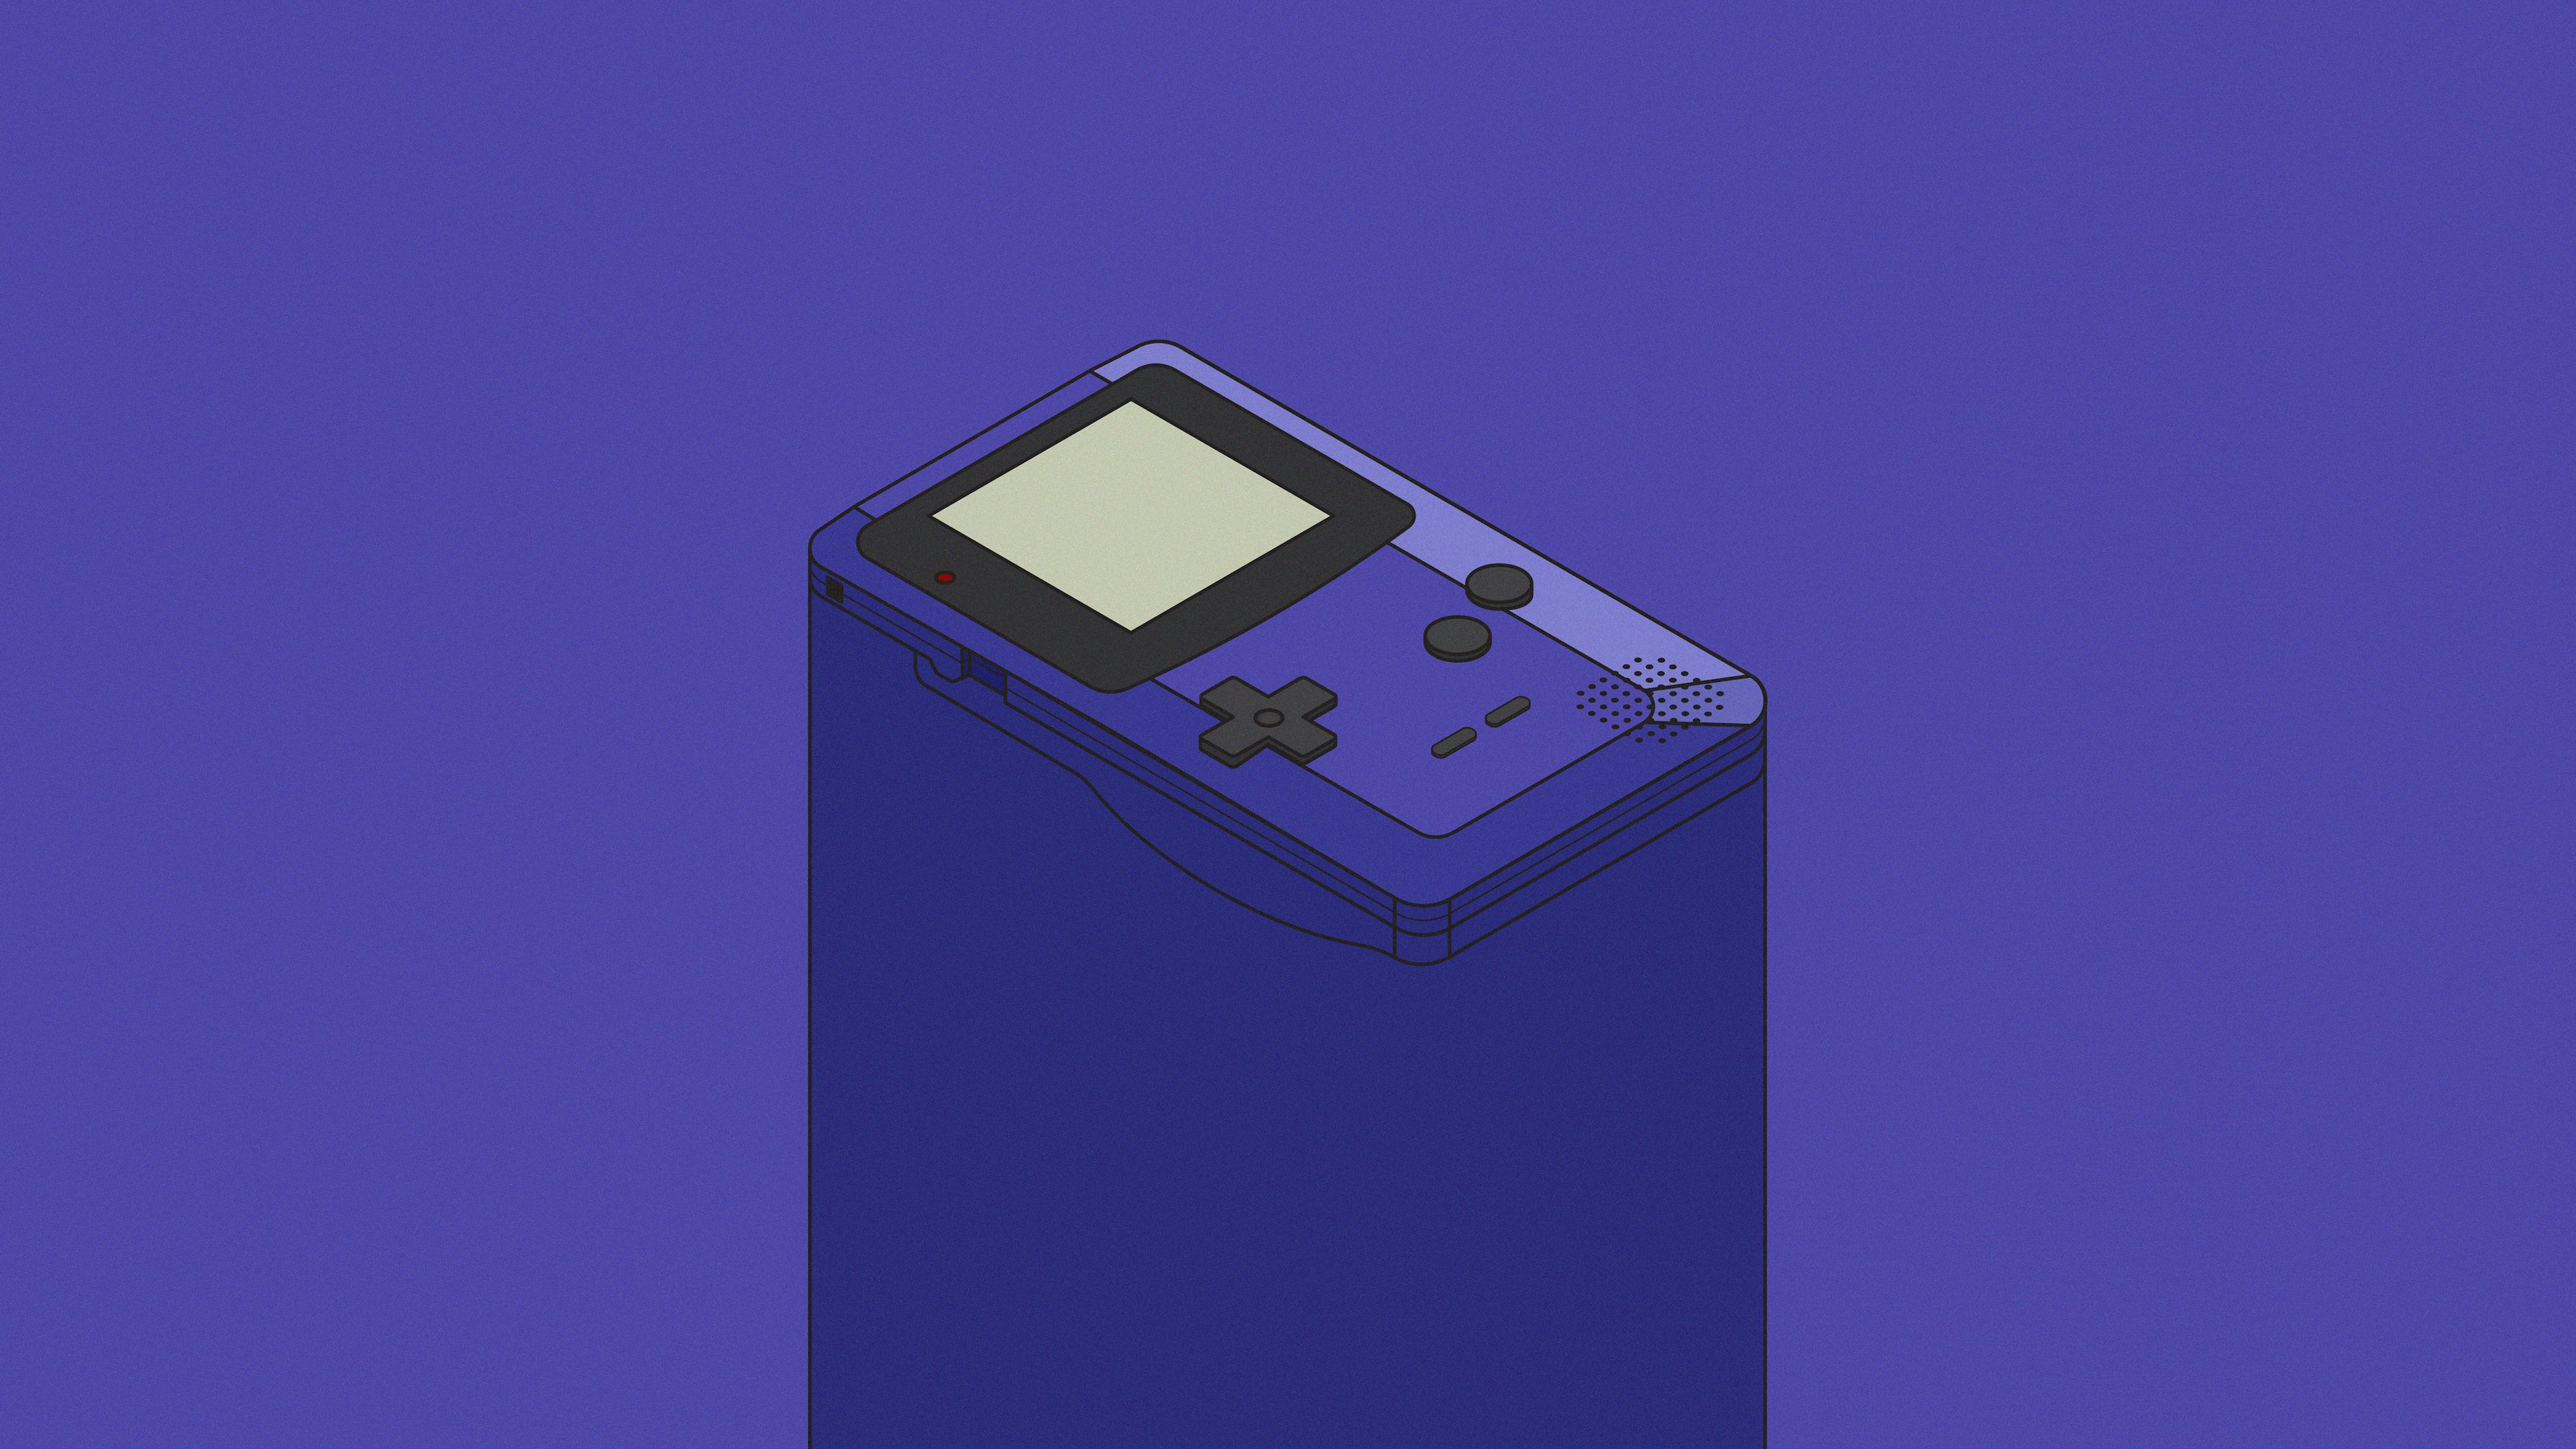 General 3840x2160 digital art artwork illustration minimalism GameBoy Color shadow 4K simple background blue background